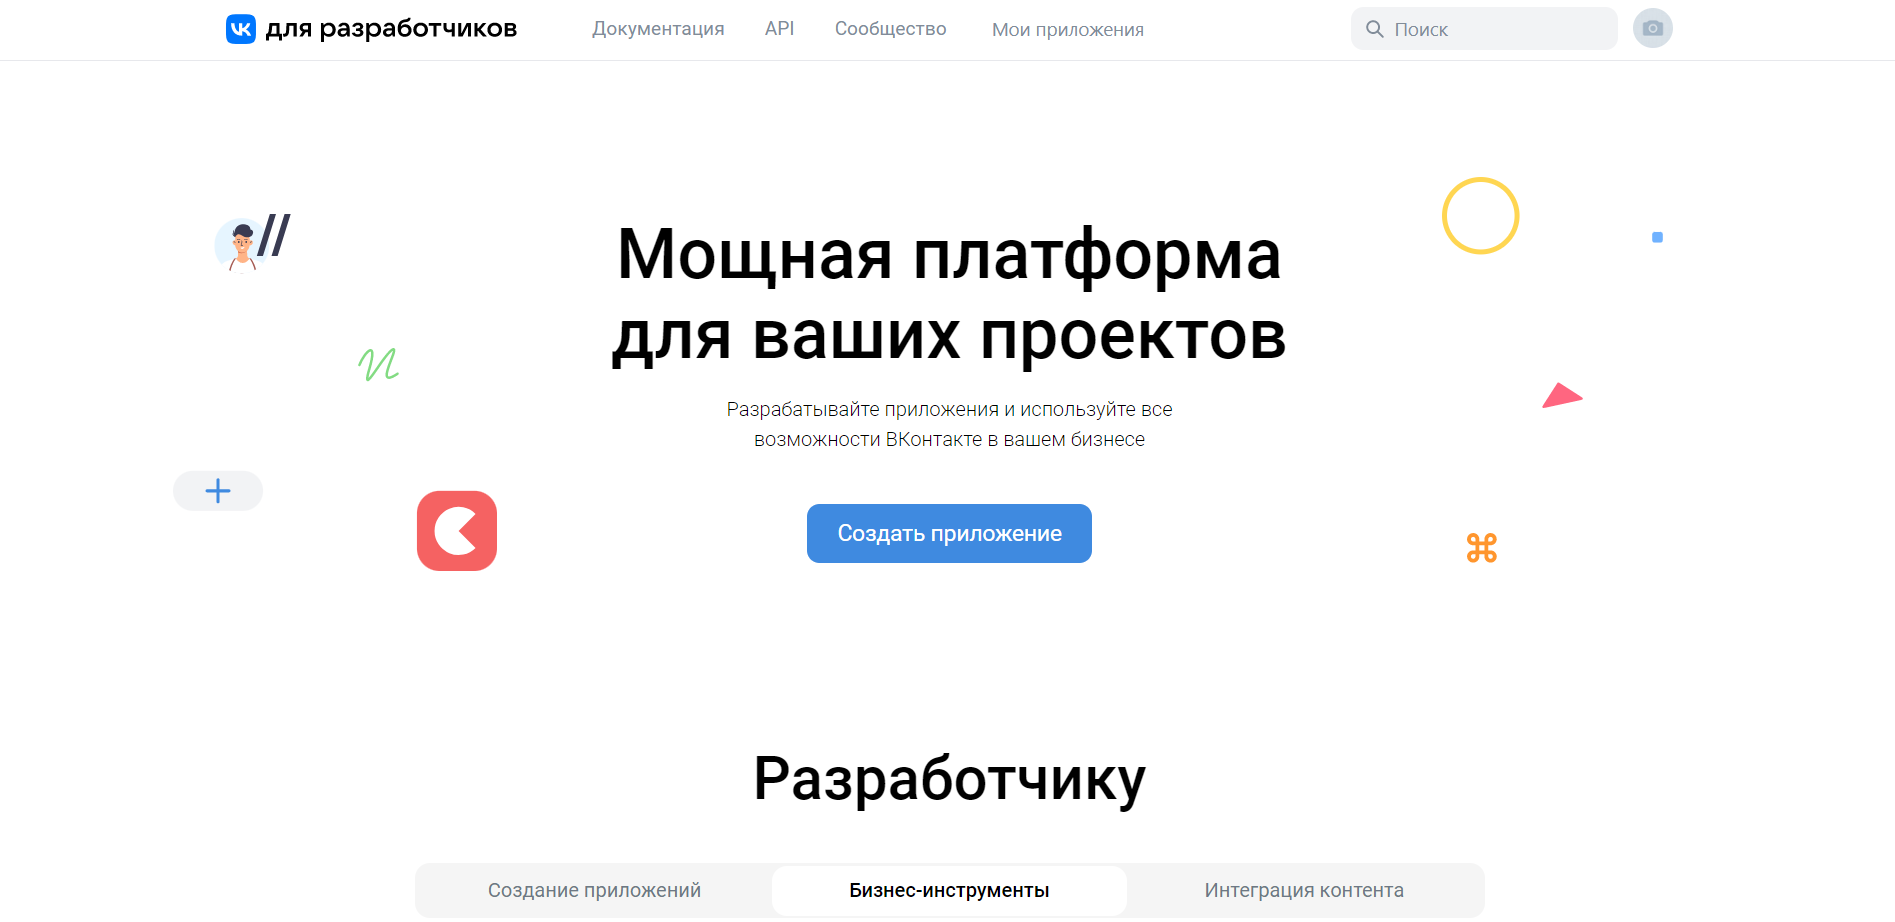 Как сделать активную ссылку на сообщество ВКонтакте